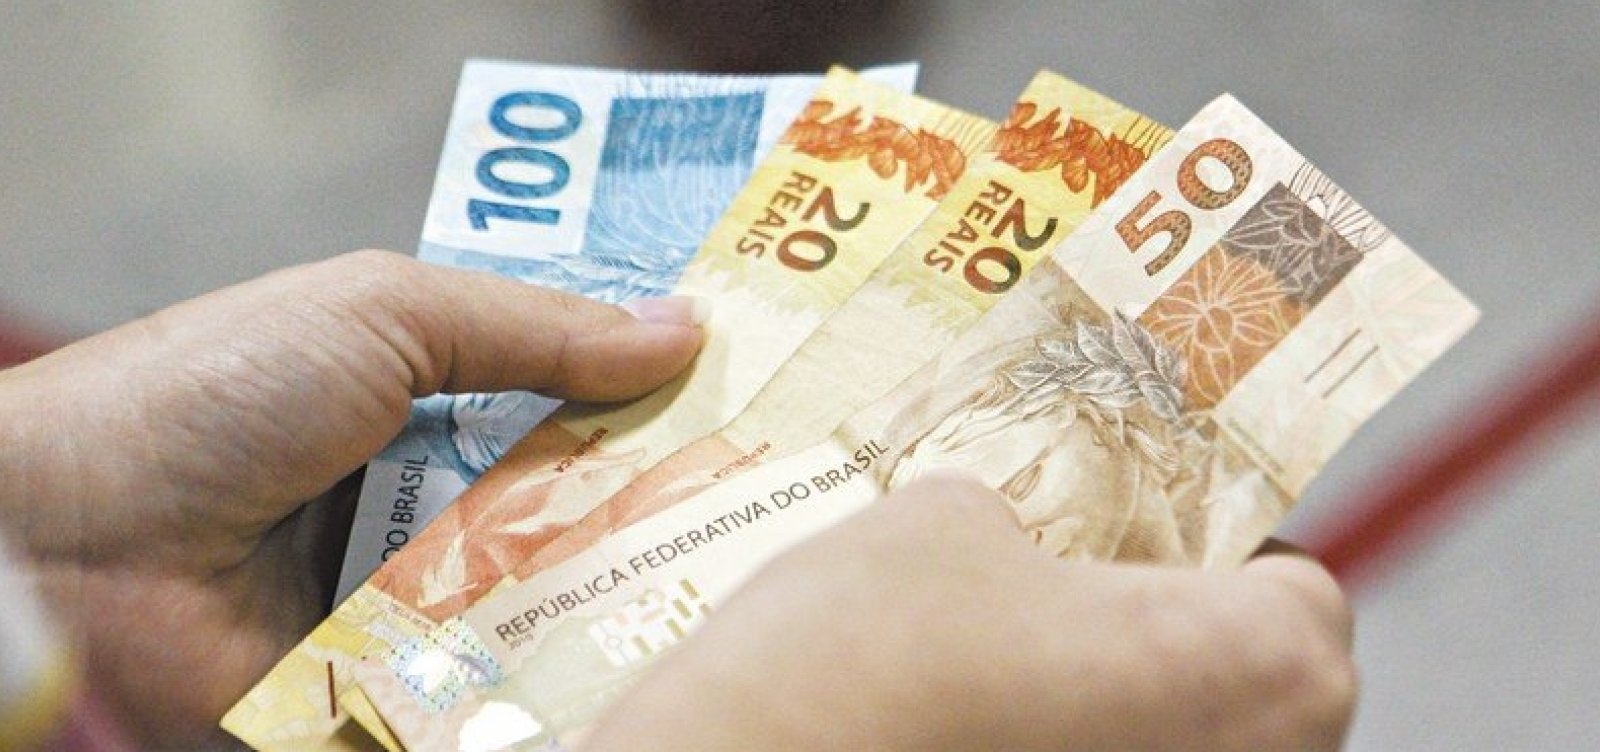 Governo pode arrecadar R$ 60 bi se tributar lucros e dividendos